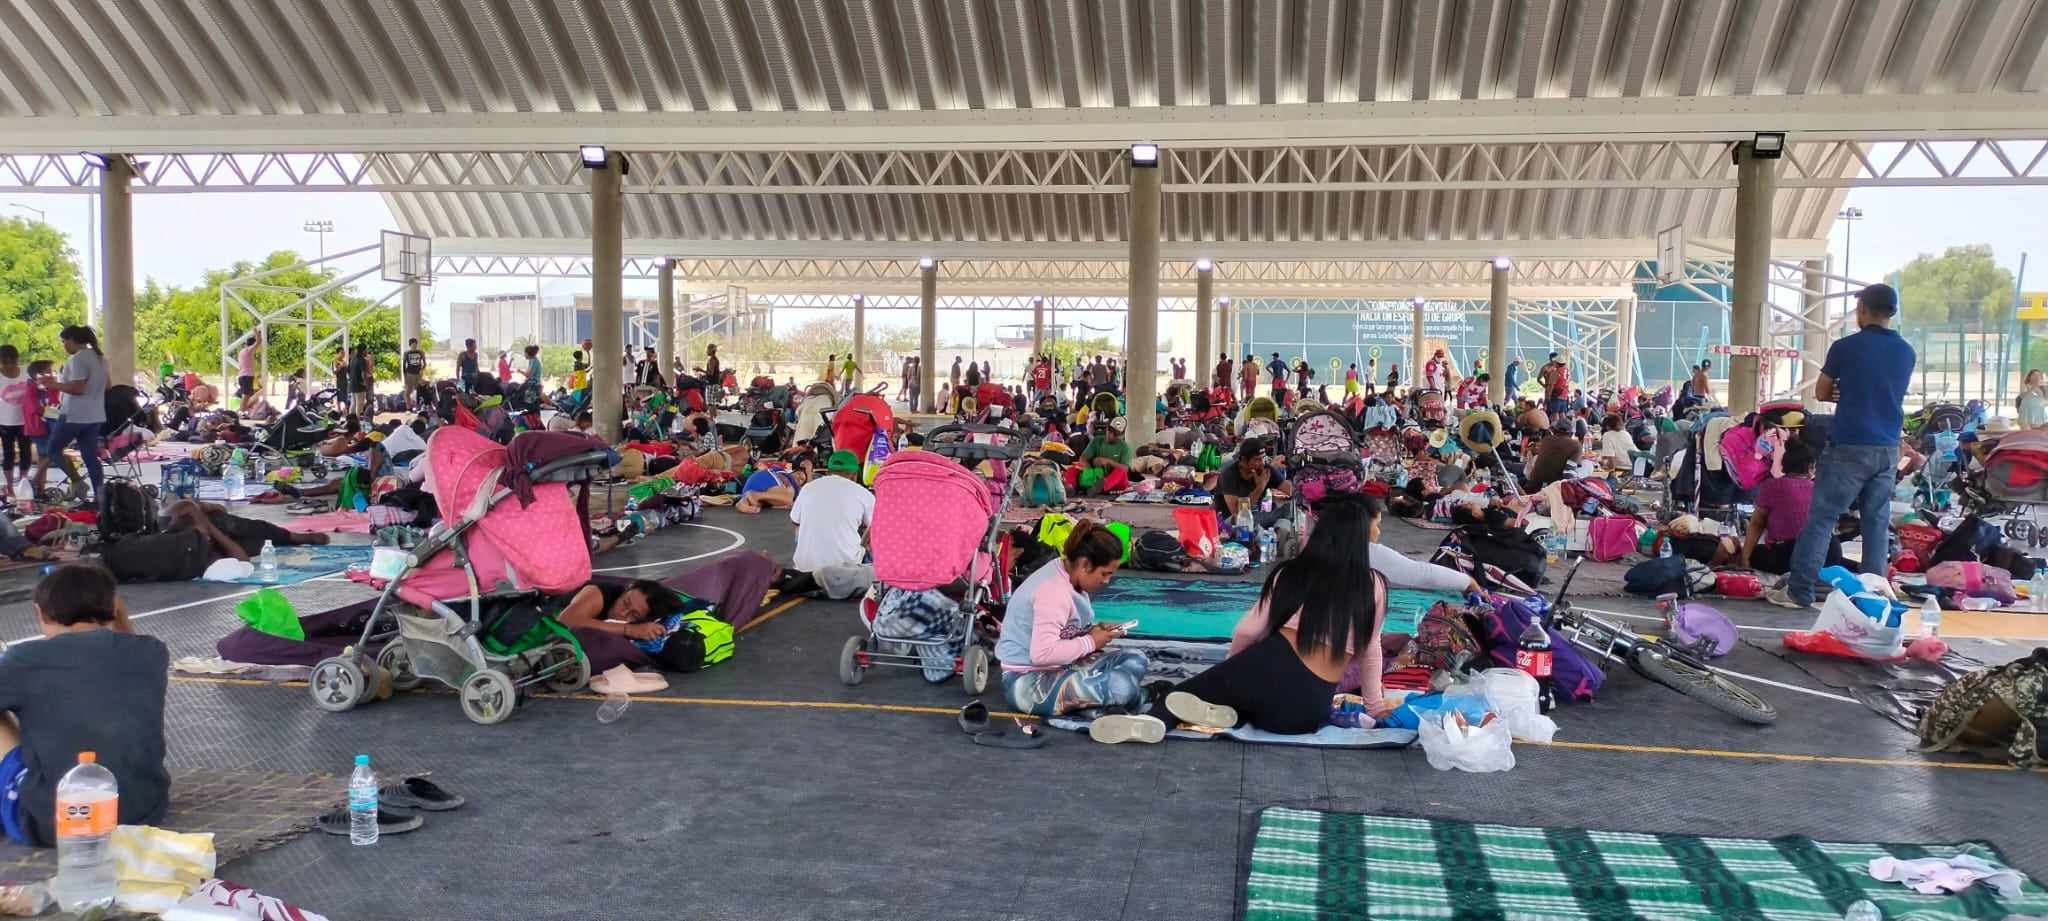 Continúa Caravana Migrante en Tehuacán; por segundo día descansan en Polideportivo